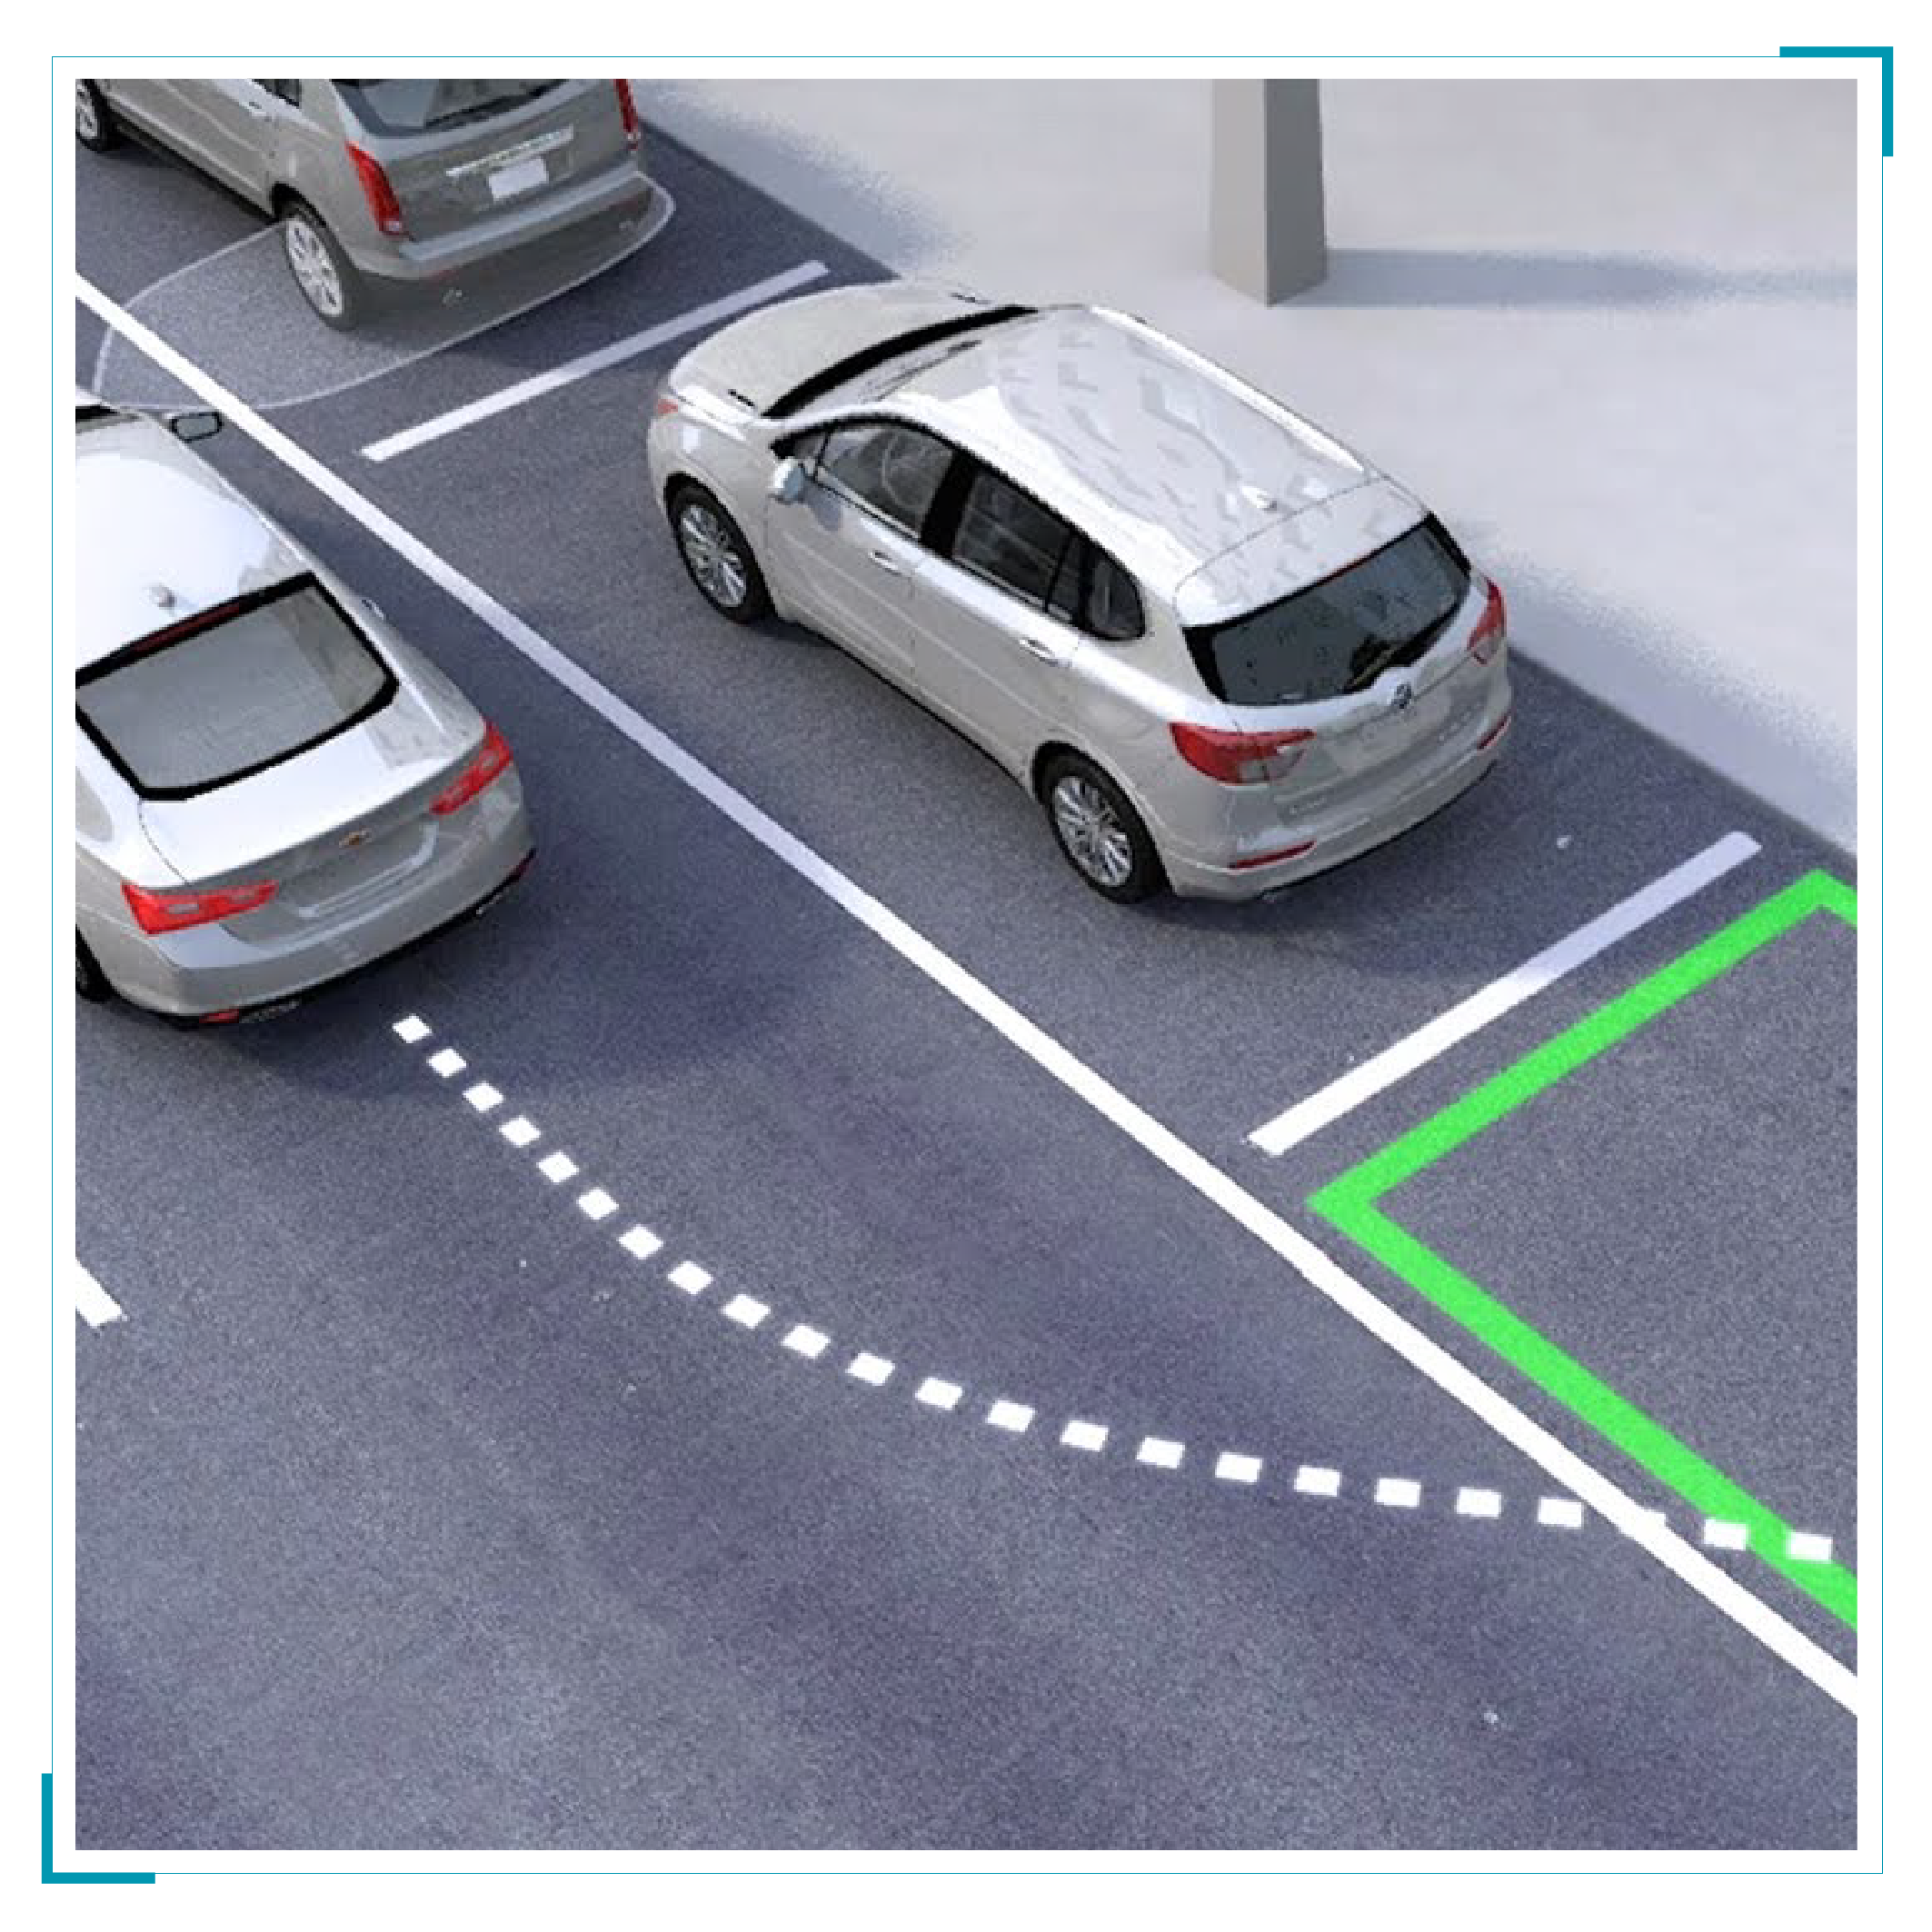 Smart Parking Test System (SPTS)